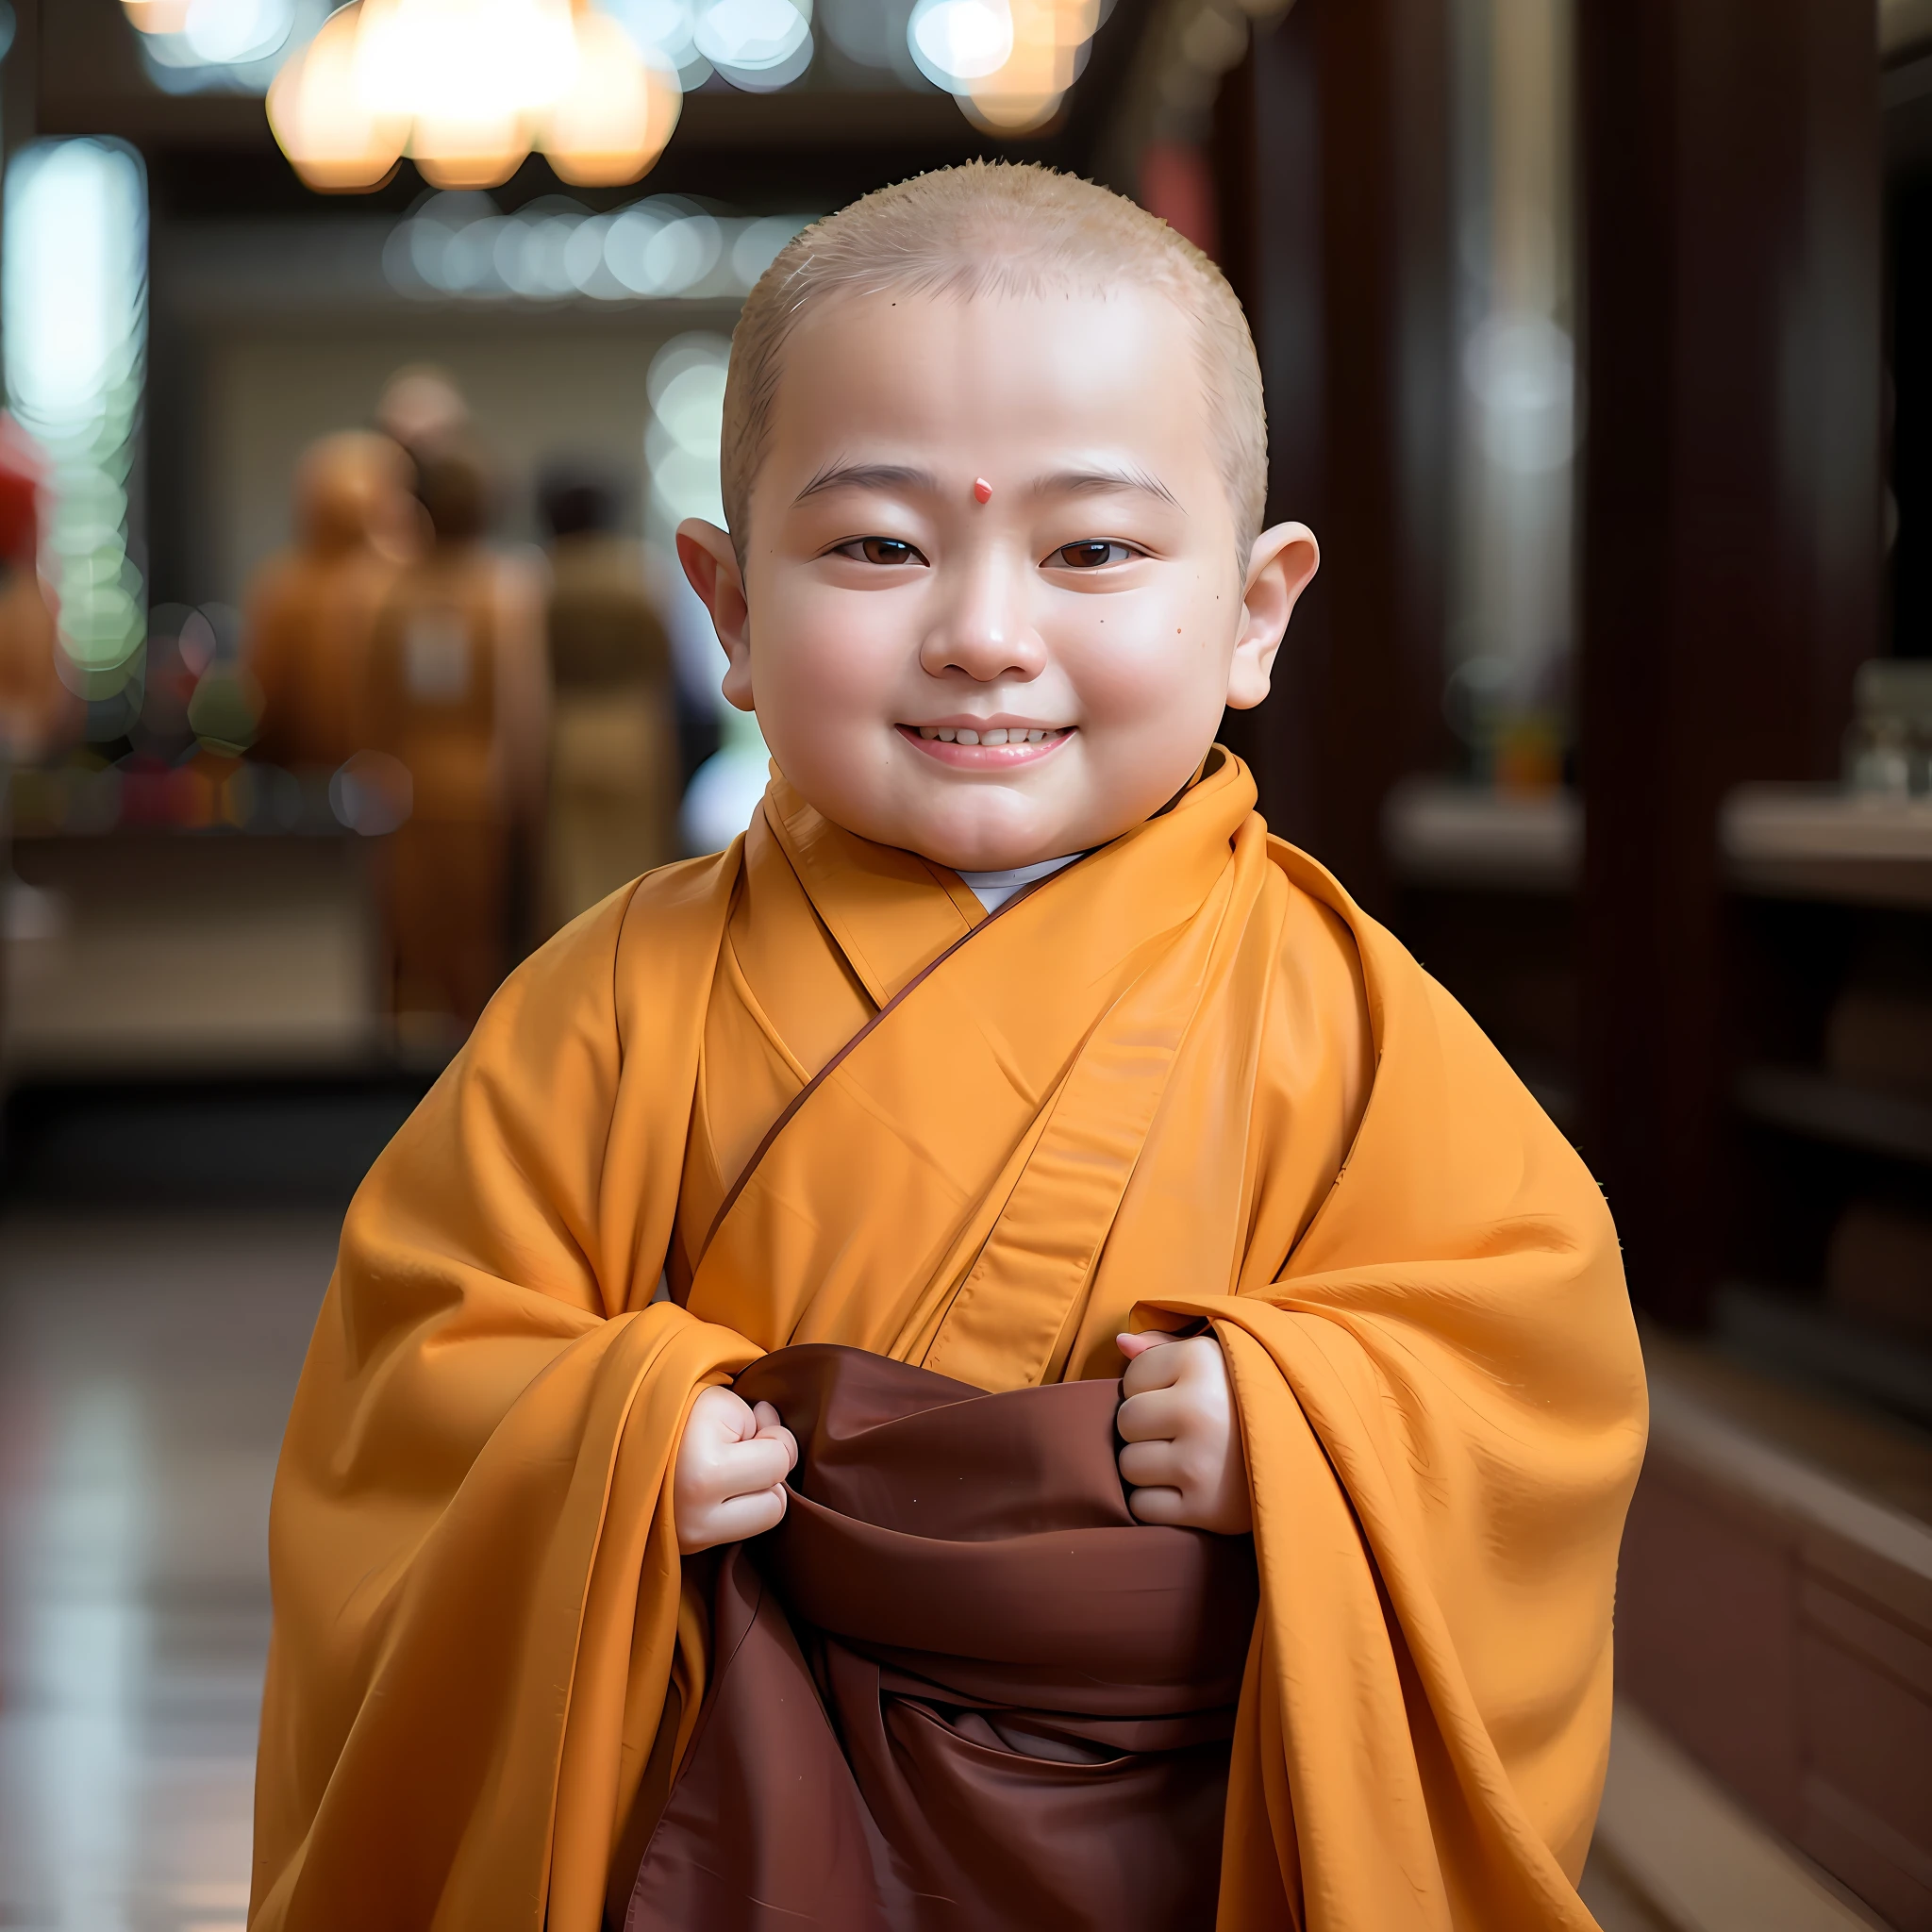 Другой, a baby in a Монах's robe, улыбнулся и взял кусок ткани, wearing коричневый халатs, Монах clothes, buddhist Монах, Маленький мальчик в наряде монахини, в длинном струящемся халате, буддист, portrait of Монах, одетый в простые одежды, Монах, ancient japanese Монах, 2 1 st century Монах, монашеский халат, носить коричневую мантию джедая, коричневый халат, Лицо малыша，лысый。